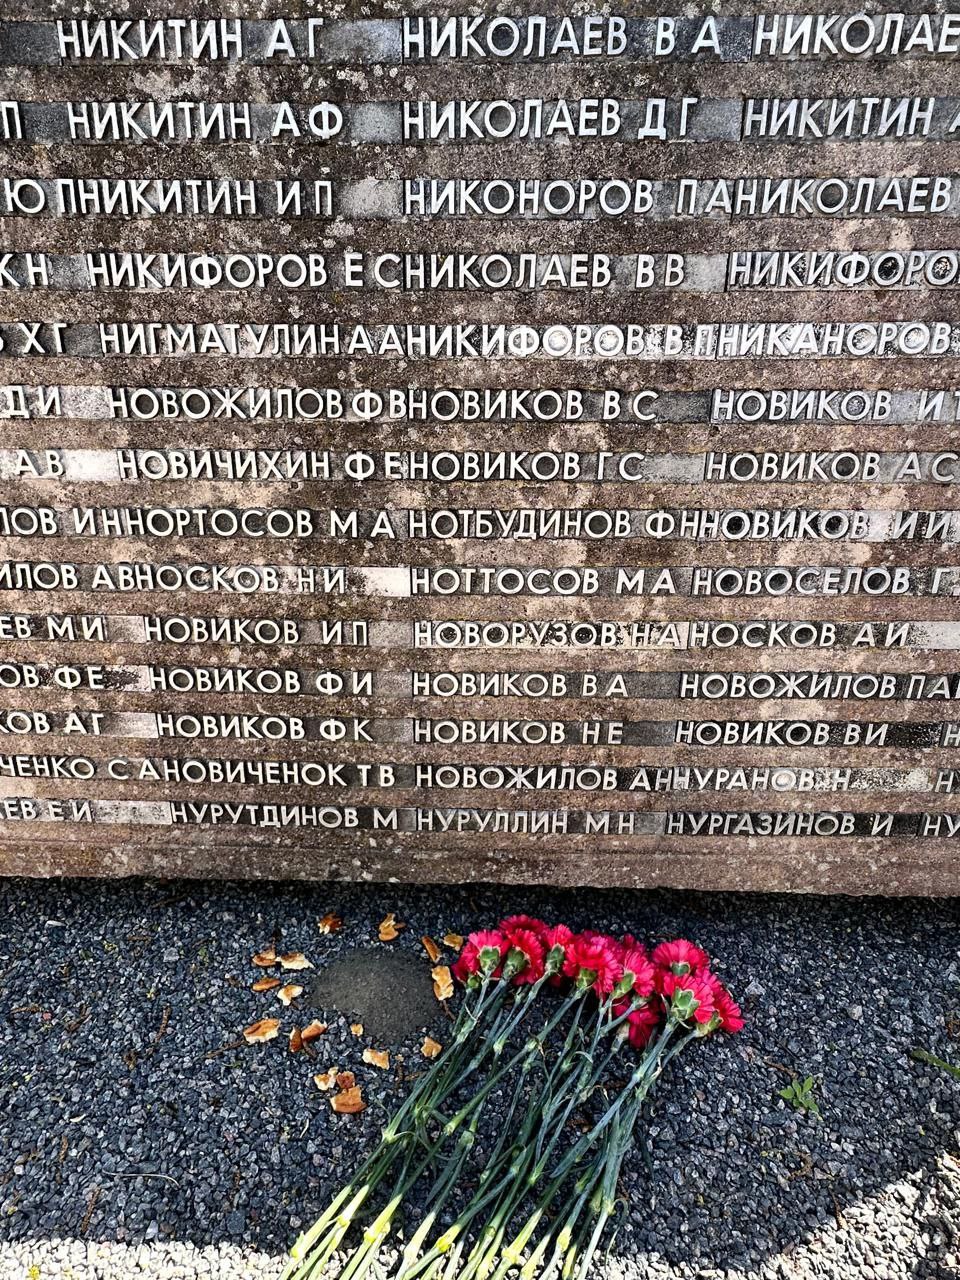 Возложение цветов на Лидовой горе на могилу, где захоронен Ноттосов Макар Алексеевич